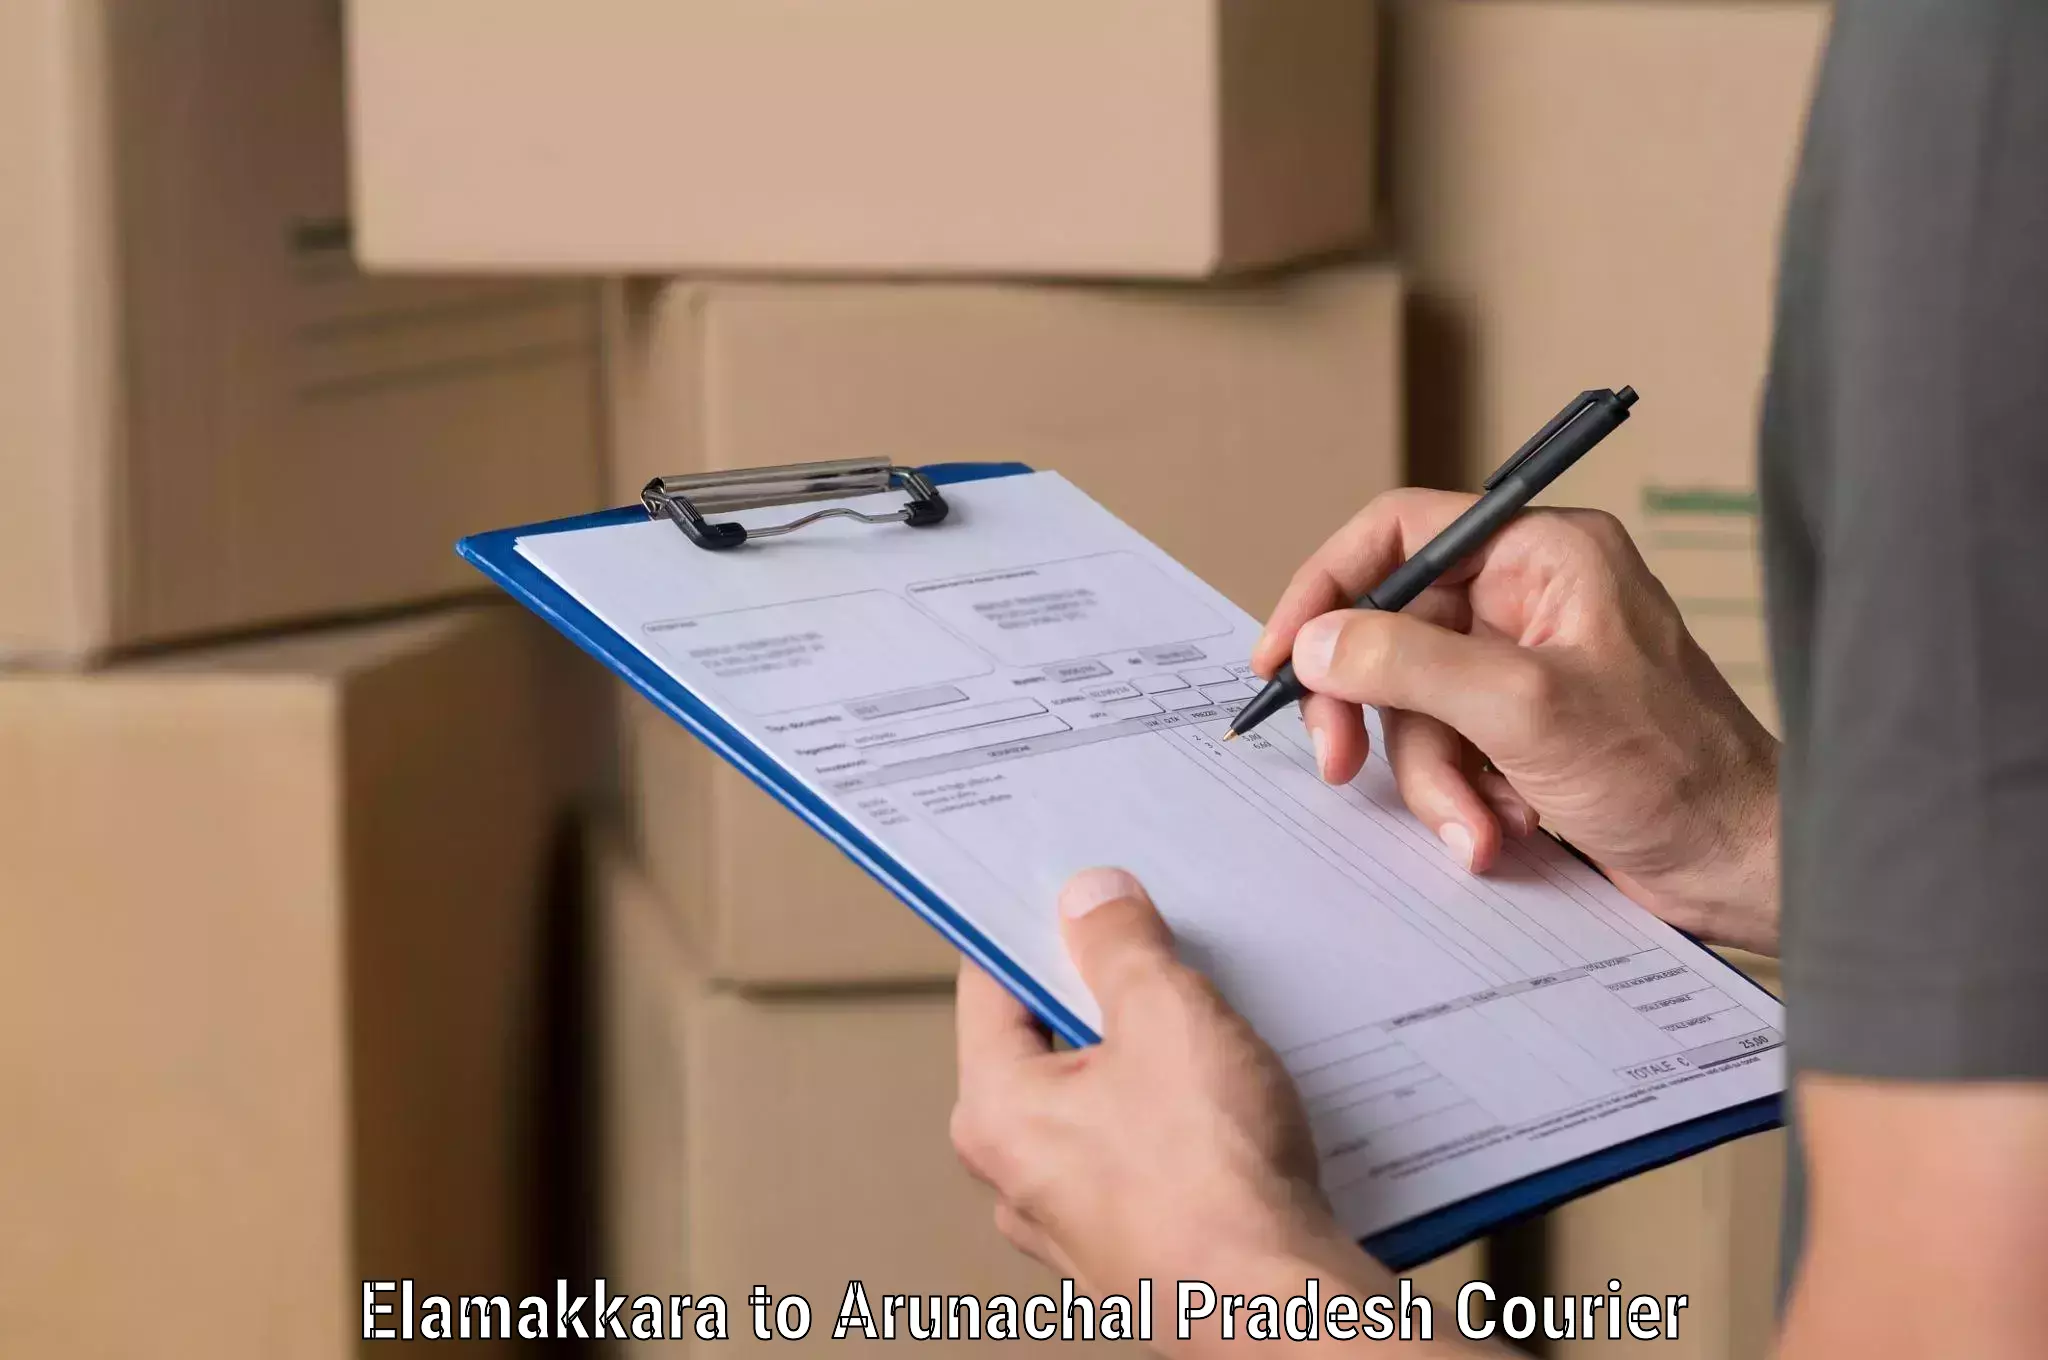 Express logistics service Elamakkara to Likabali